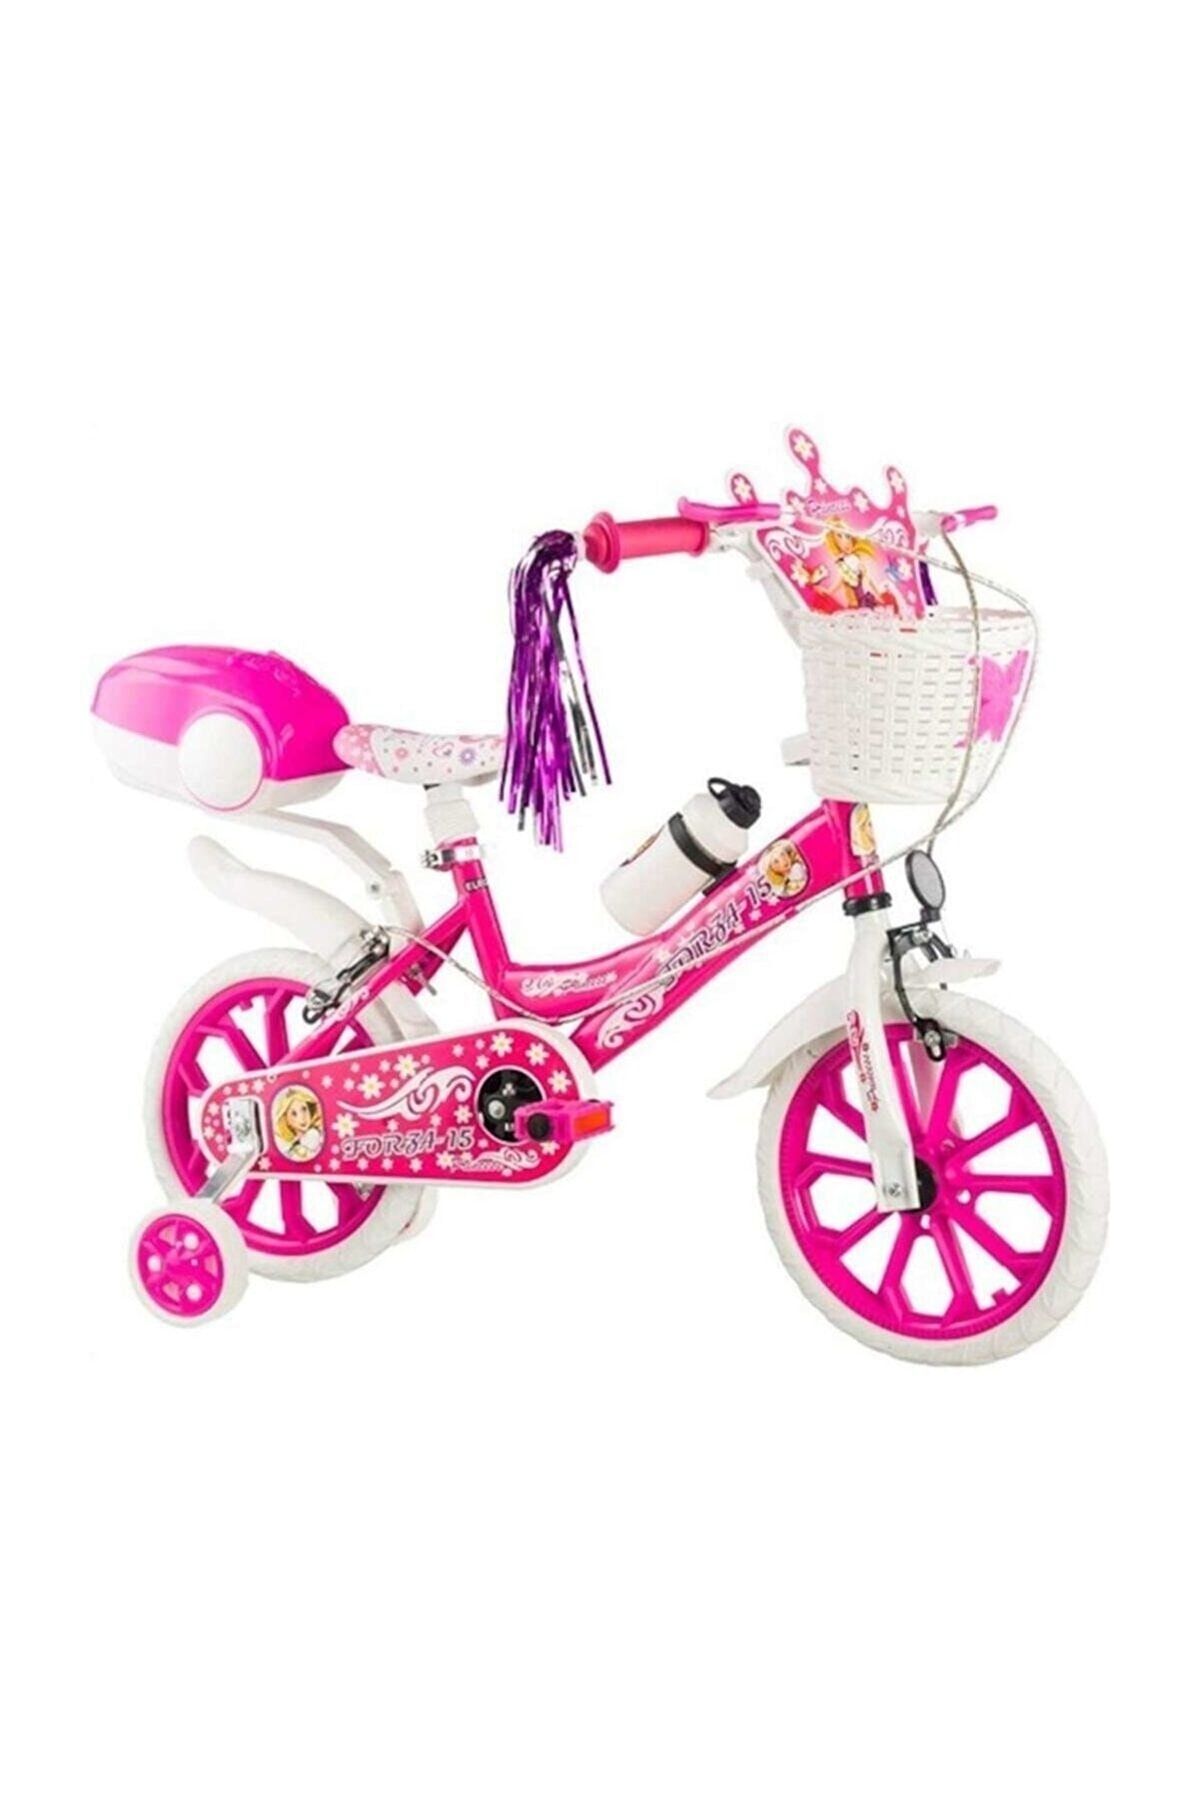 Ünal Forza 15 Jant Lüx Kız Çocuk Bisikleti Pembe 3-6 Yaş Bisiklet 15-pembe